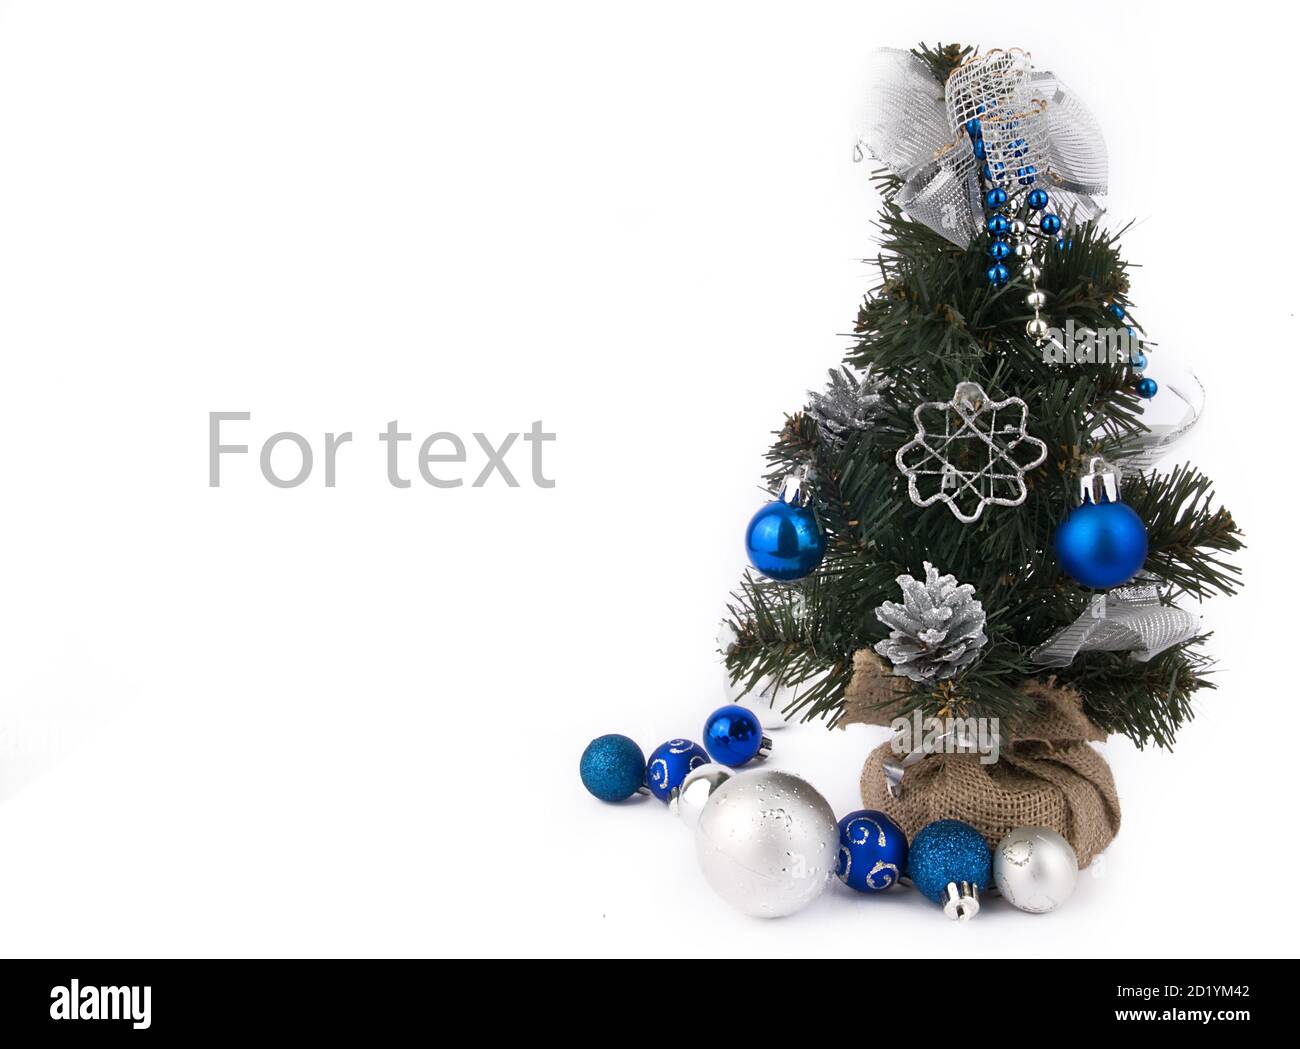 Fond de Noël avec arbre du nouvel an et décorations blanc-bleu Banque D'Images